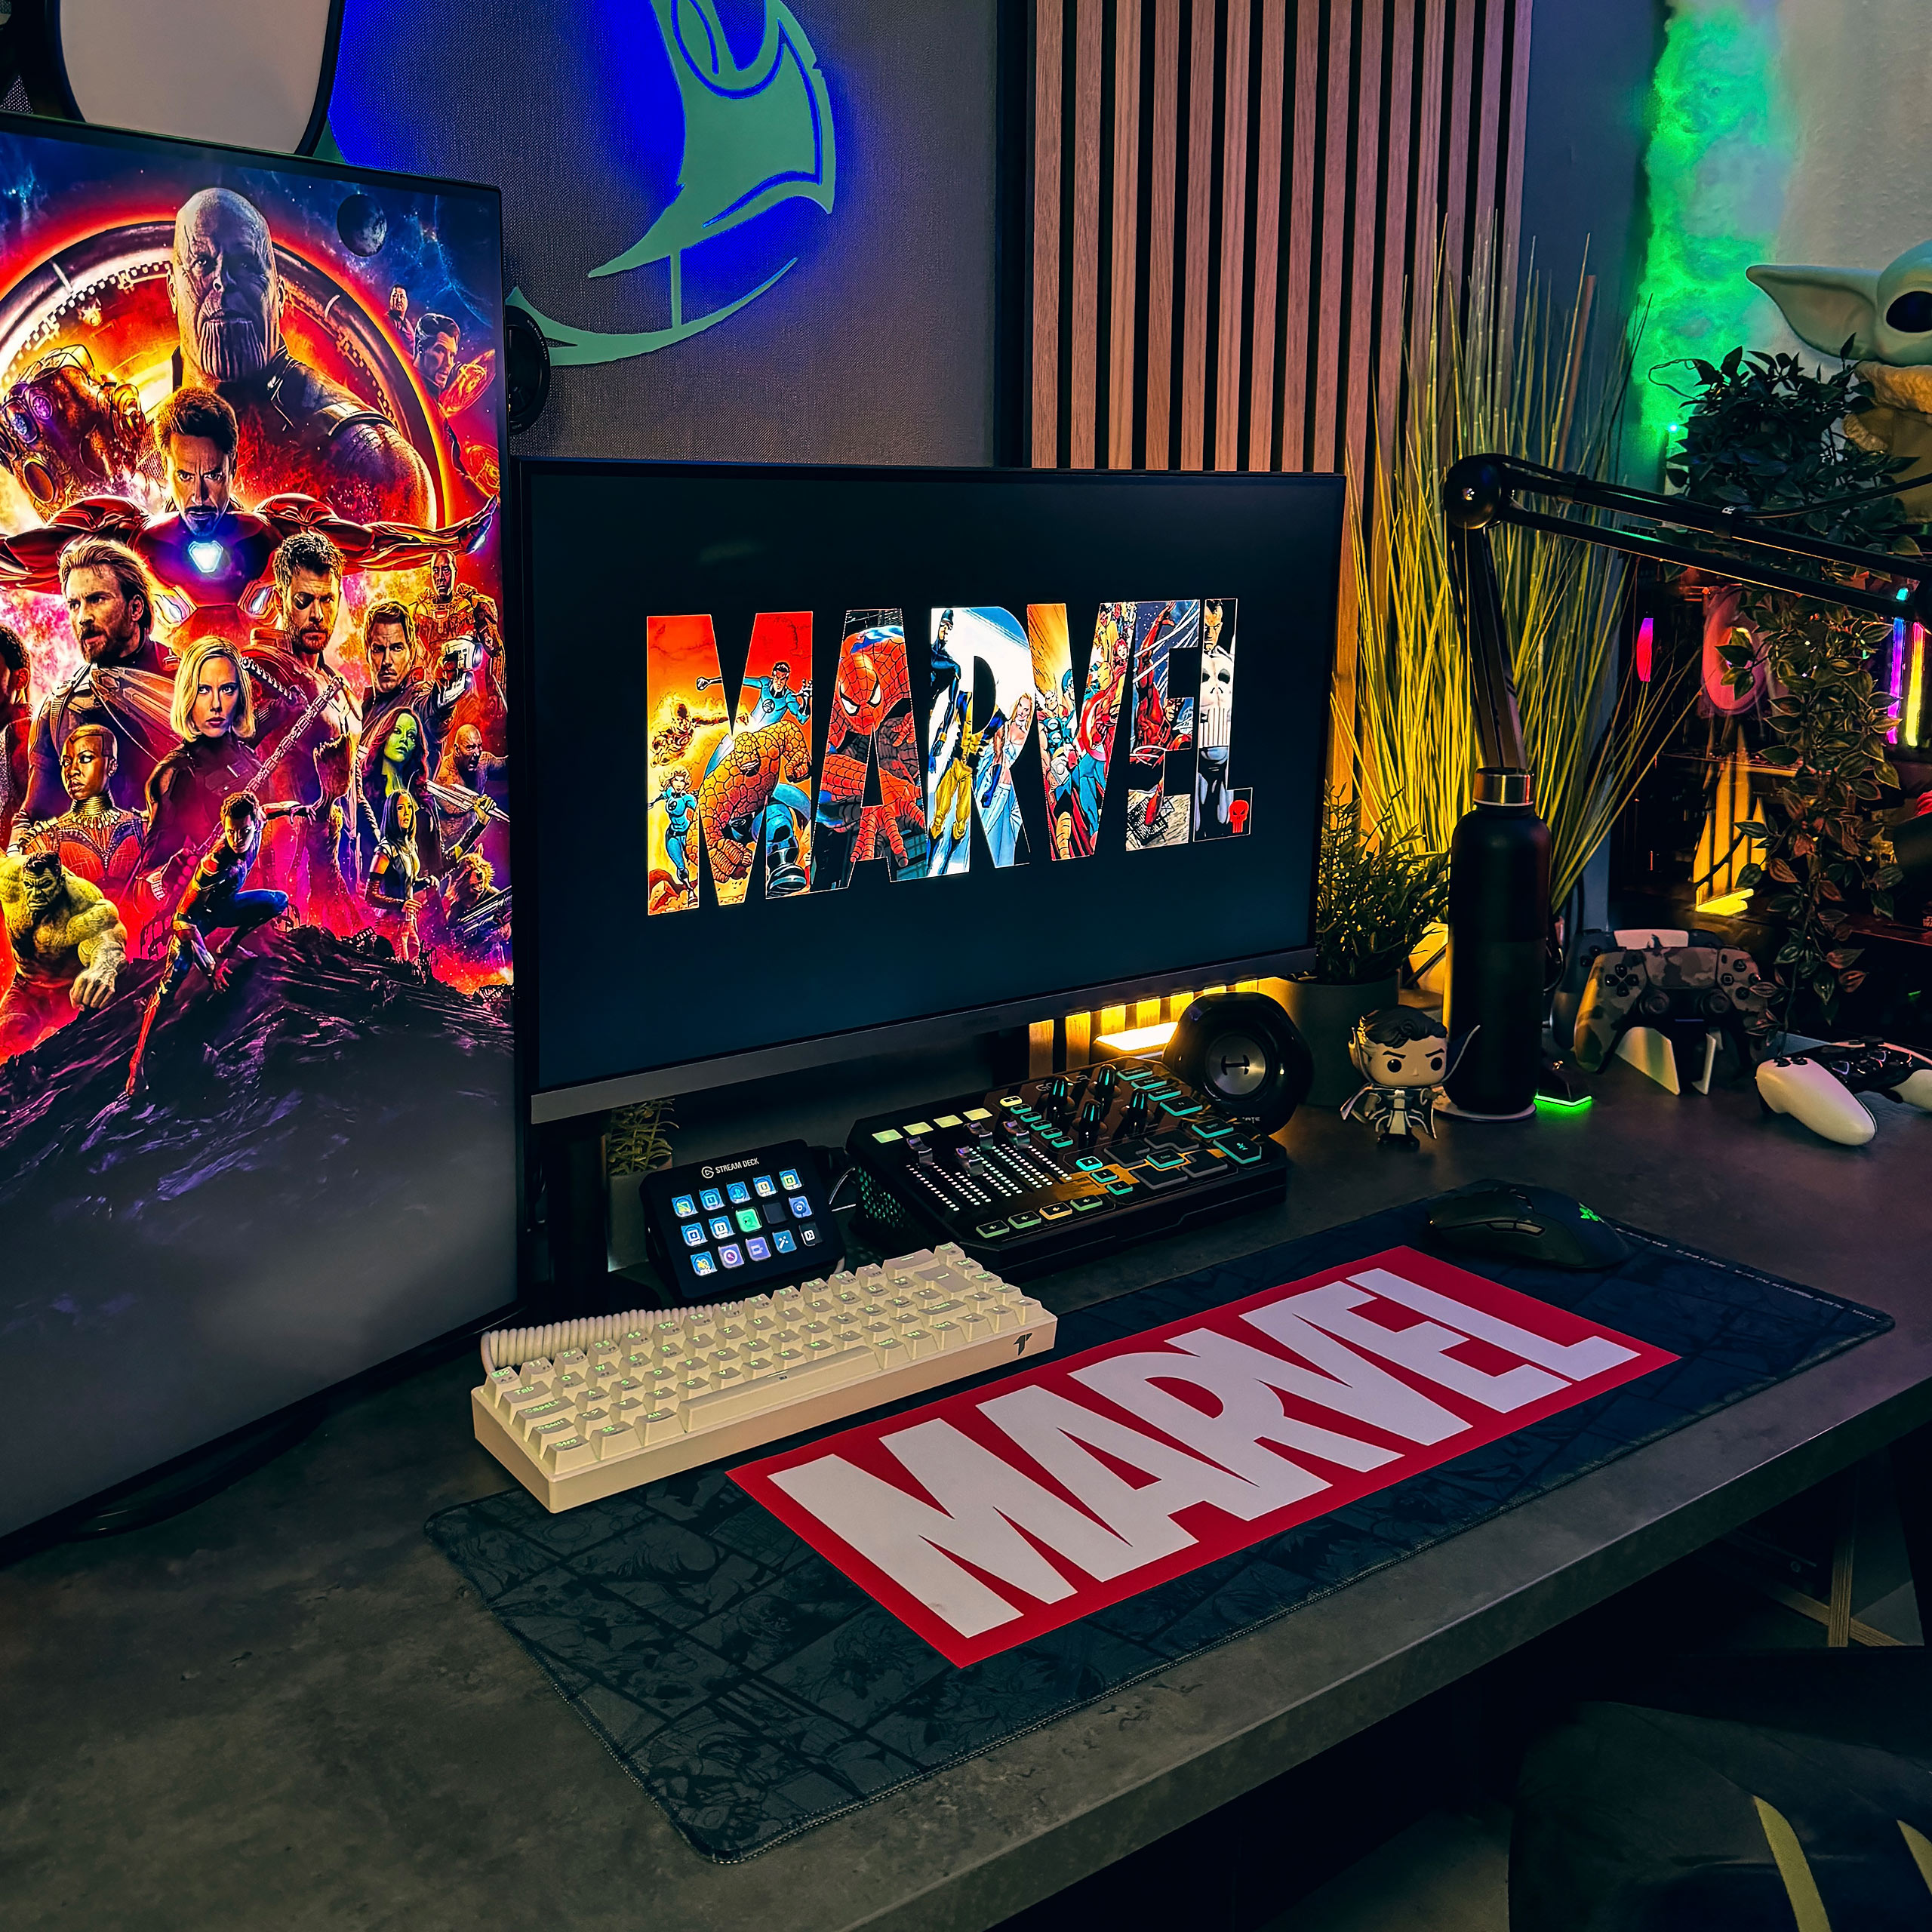 Marvel - Logo Mousepad